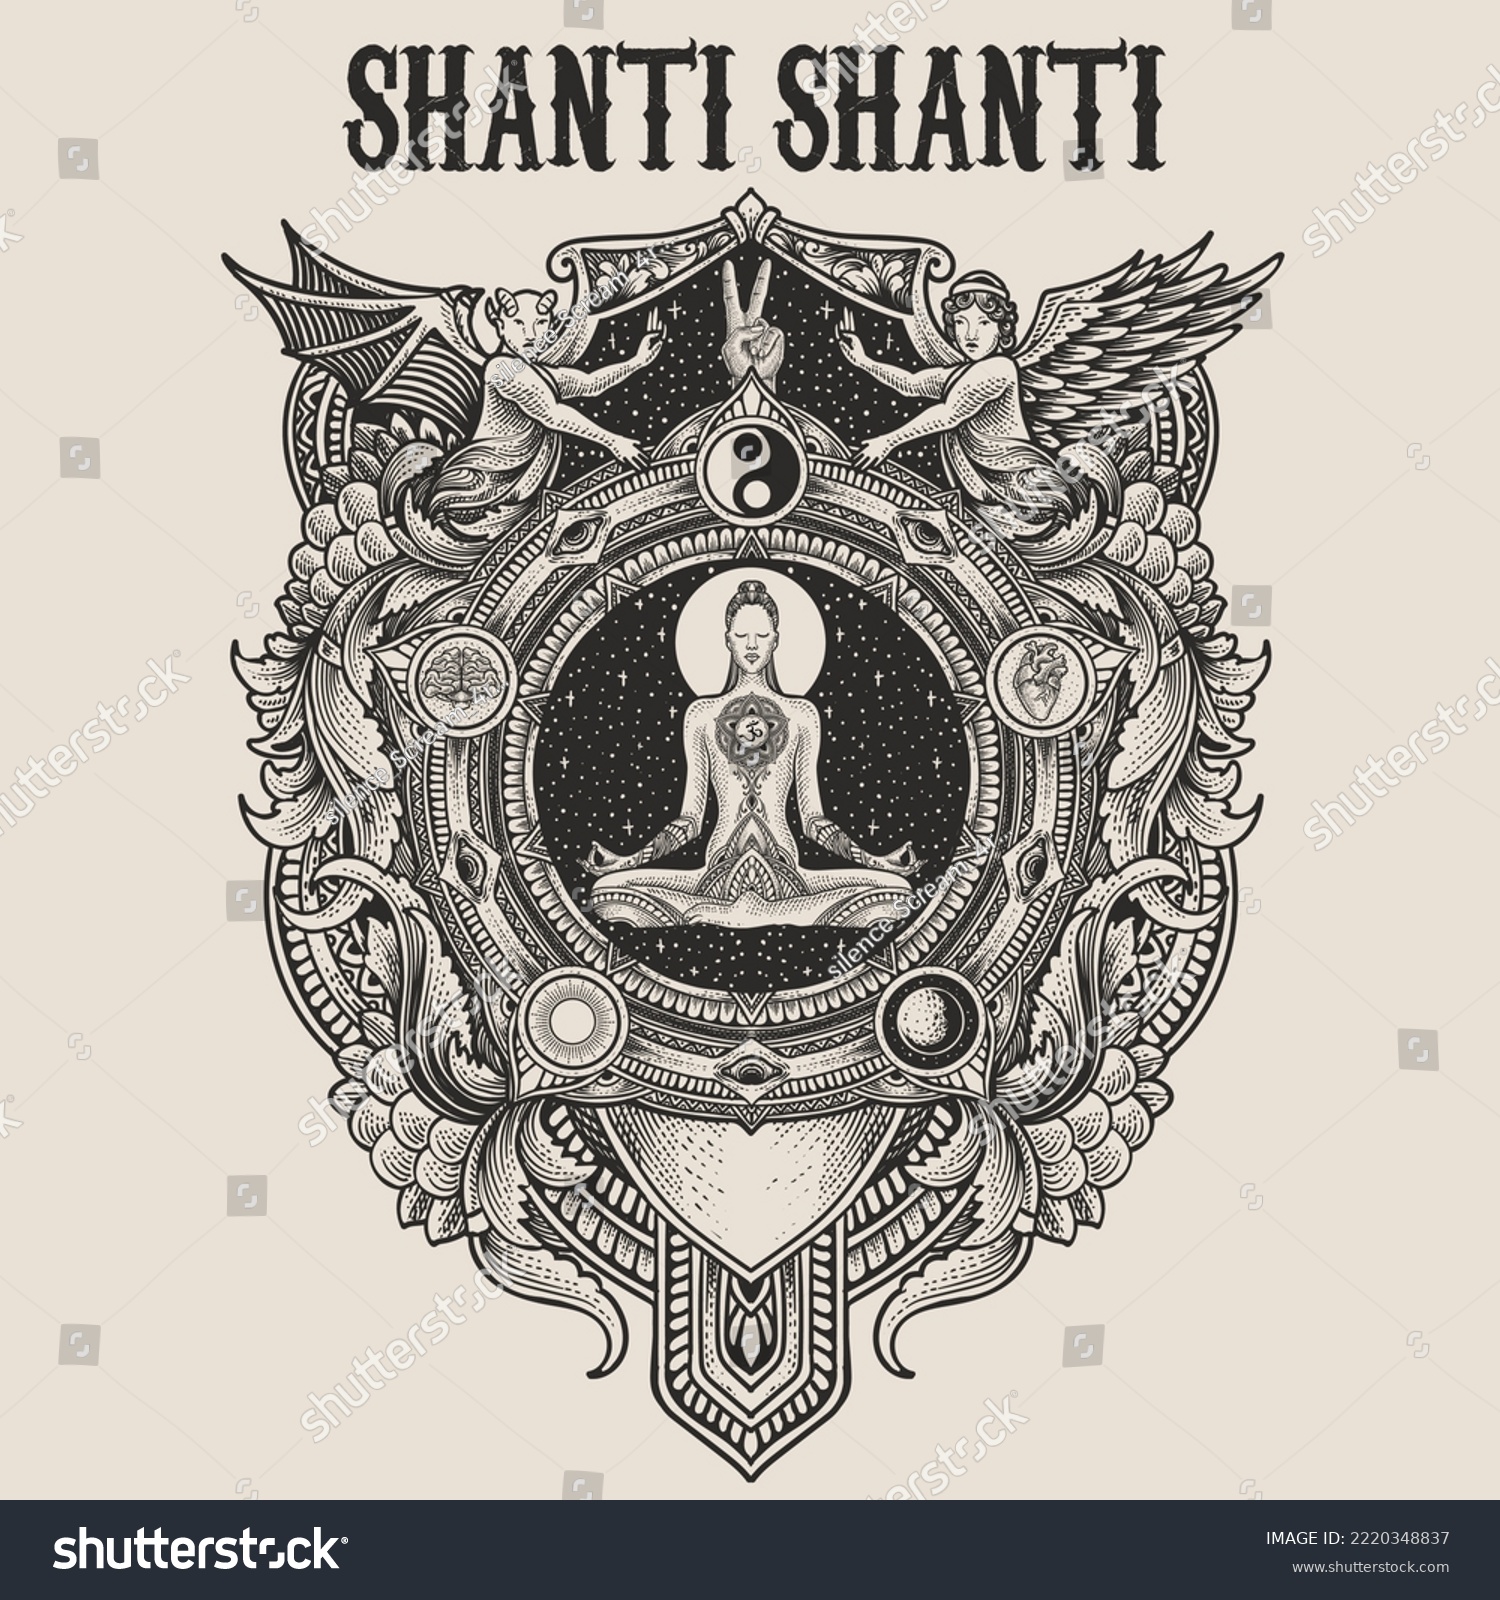 SVG of illustration yoga pose with engraving ornament frame svg